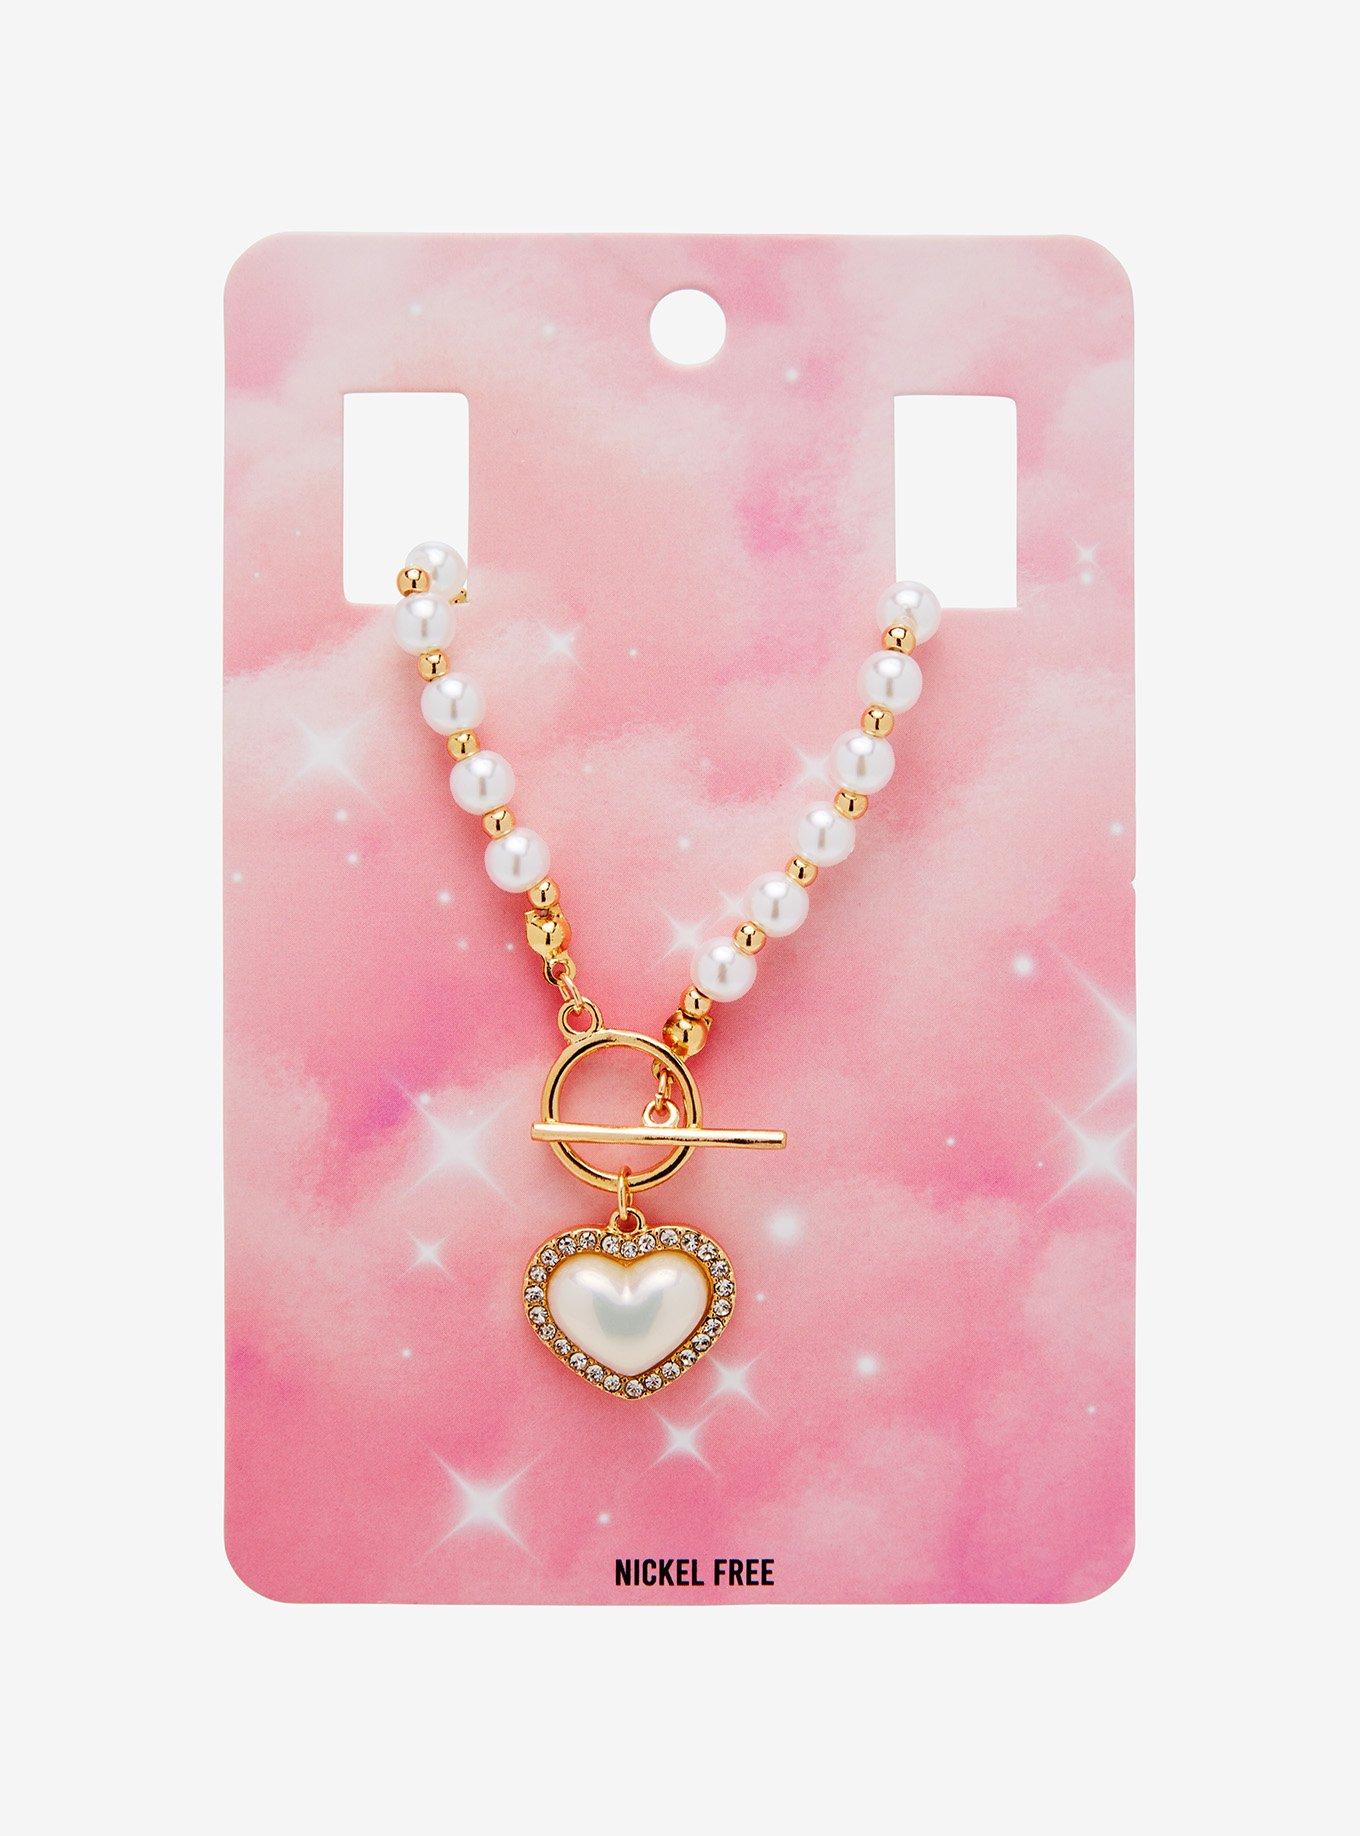 Pearl Beads Glossy Kiss Lock Metal Chain Clutch Box, Elegent